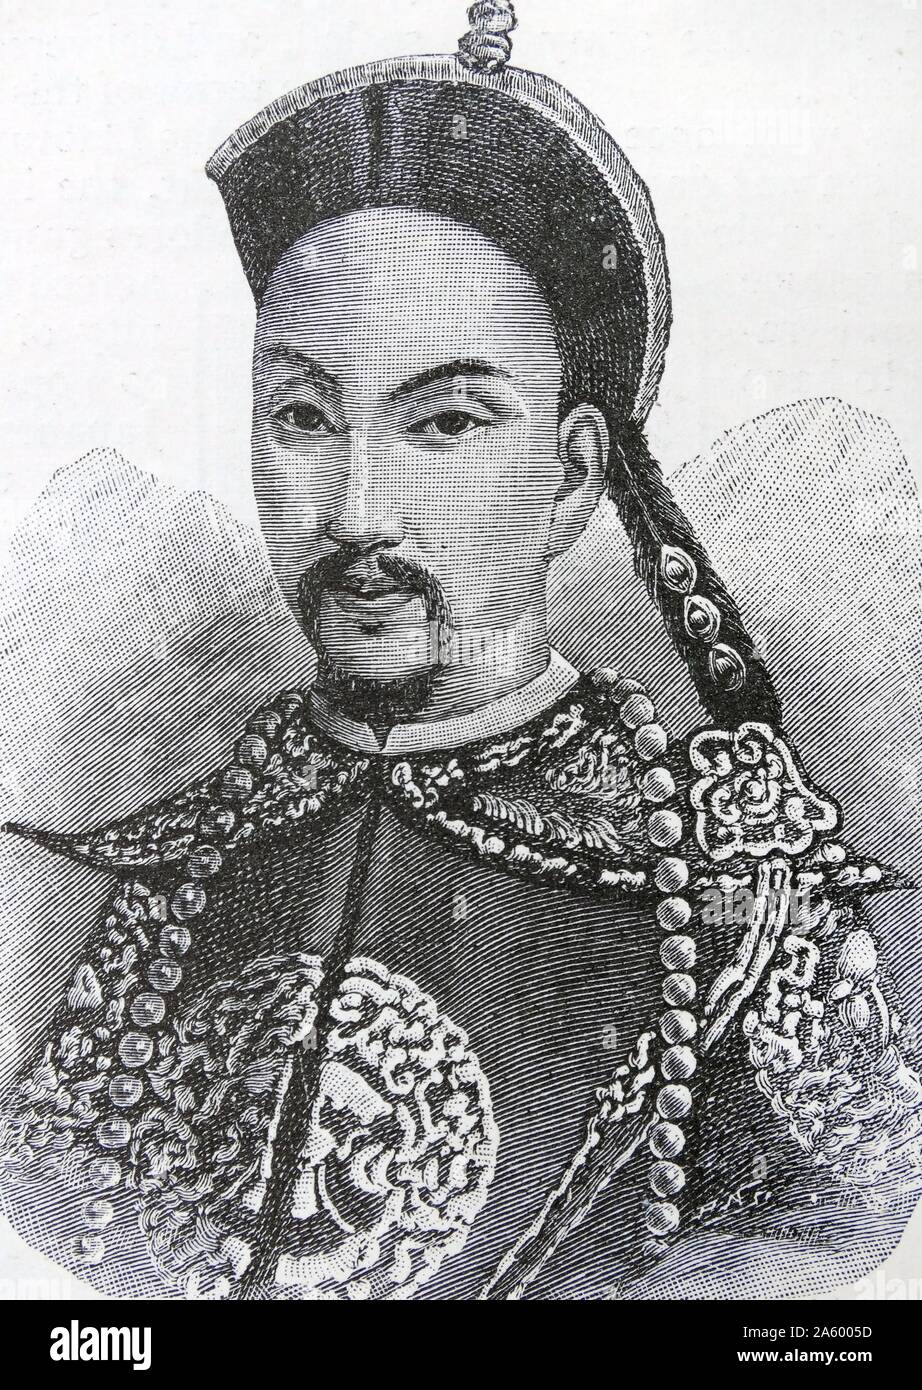 Portrait de l'empereur Guangxu (1871-1908) onzième empereur de la dynastie des Qing, et le neuvième empereur Qing de régner sur la Chine. Banque D'Images